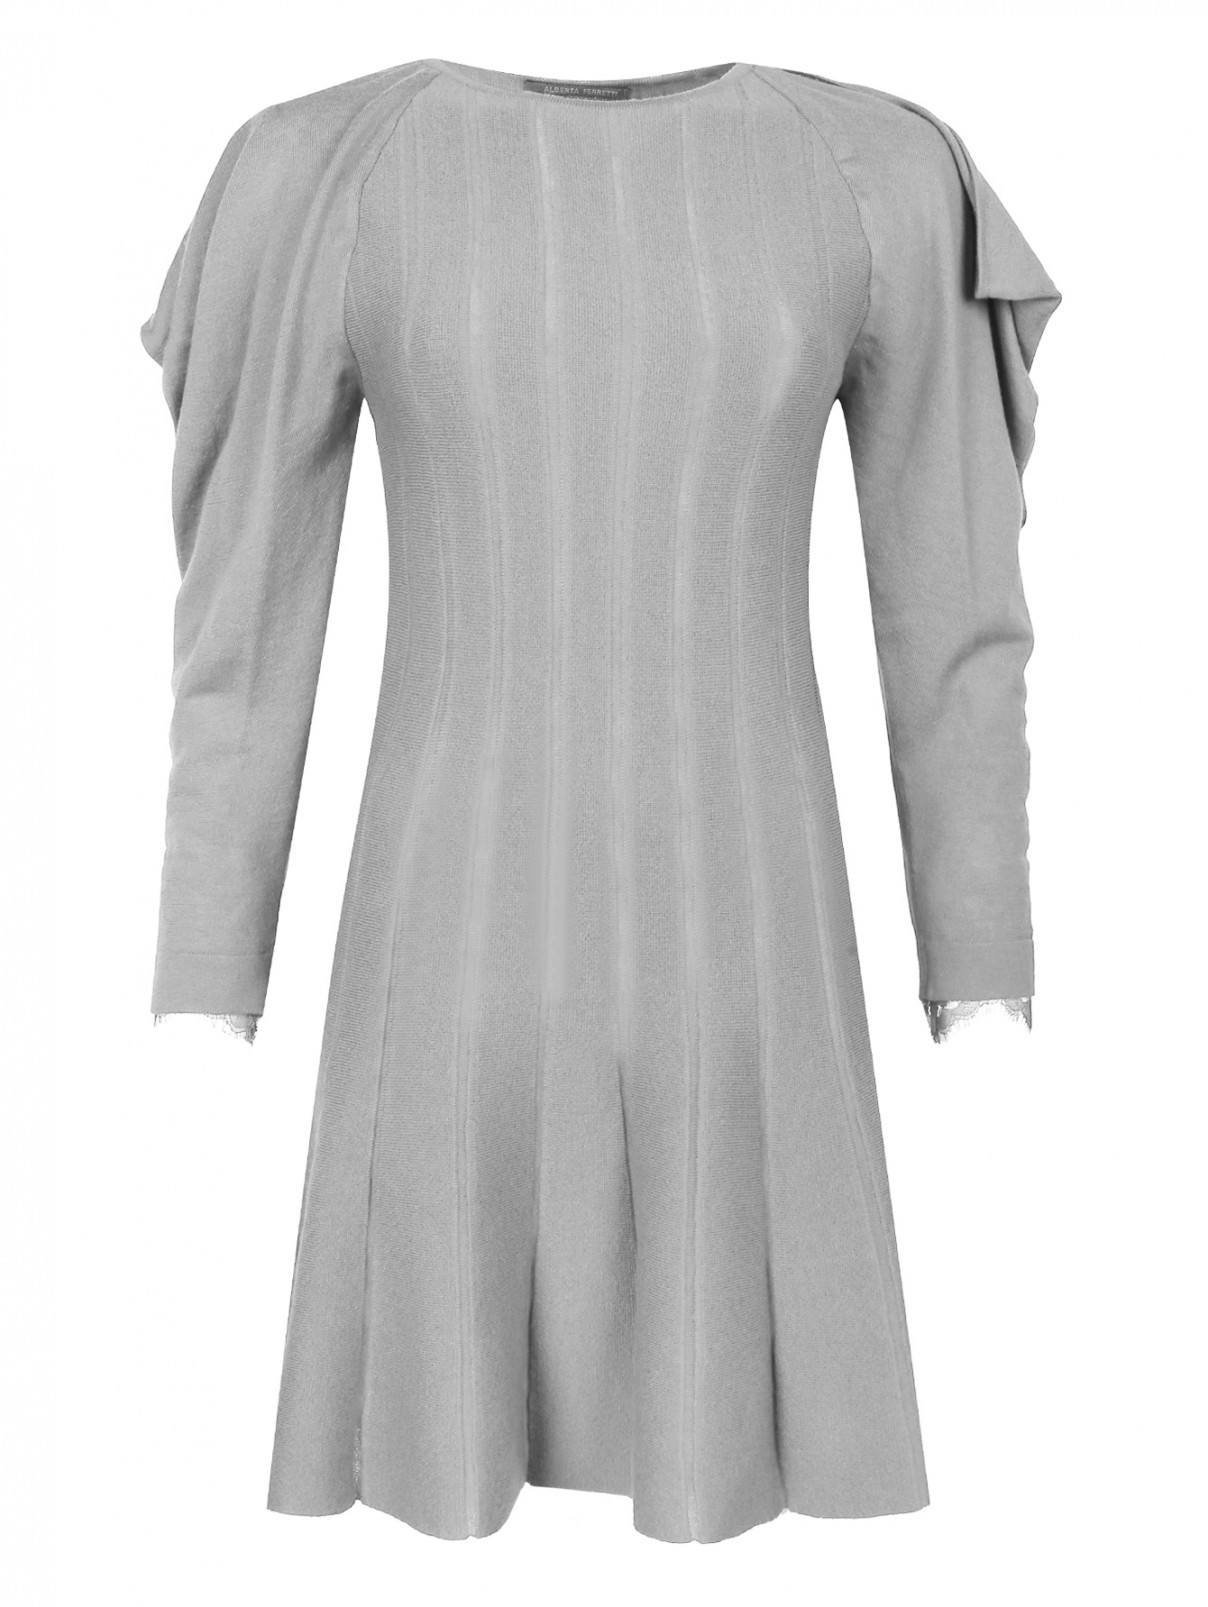 Платье из шерсти с объемными рукавами Alberta Ferretti  –  Общий вид  – Цвет:  Серый